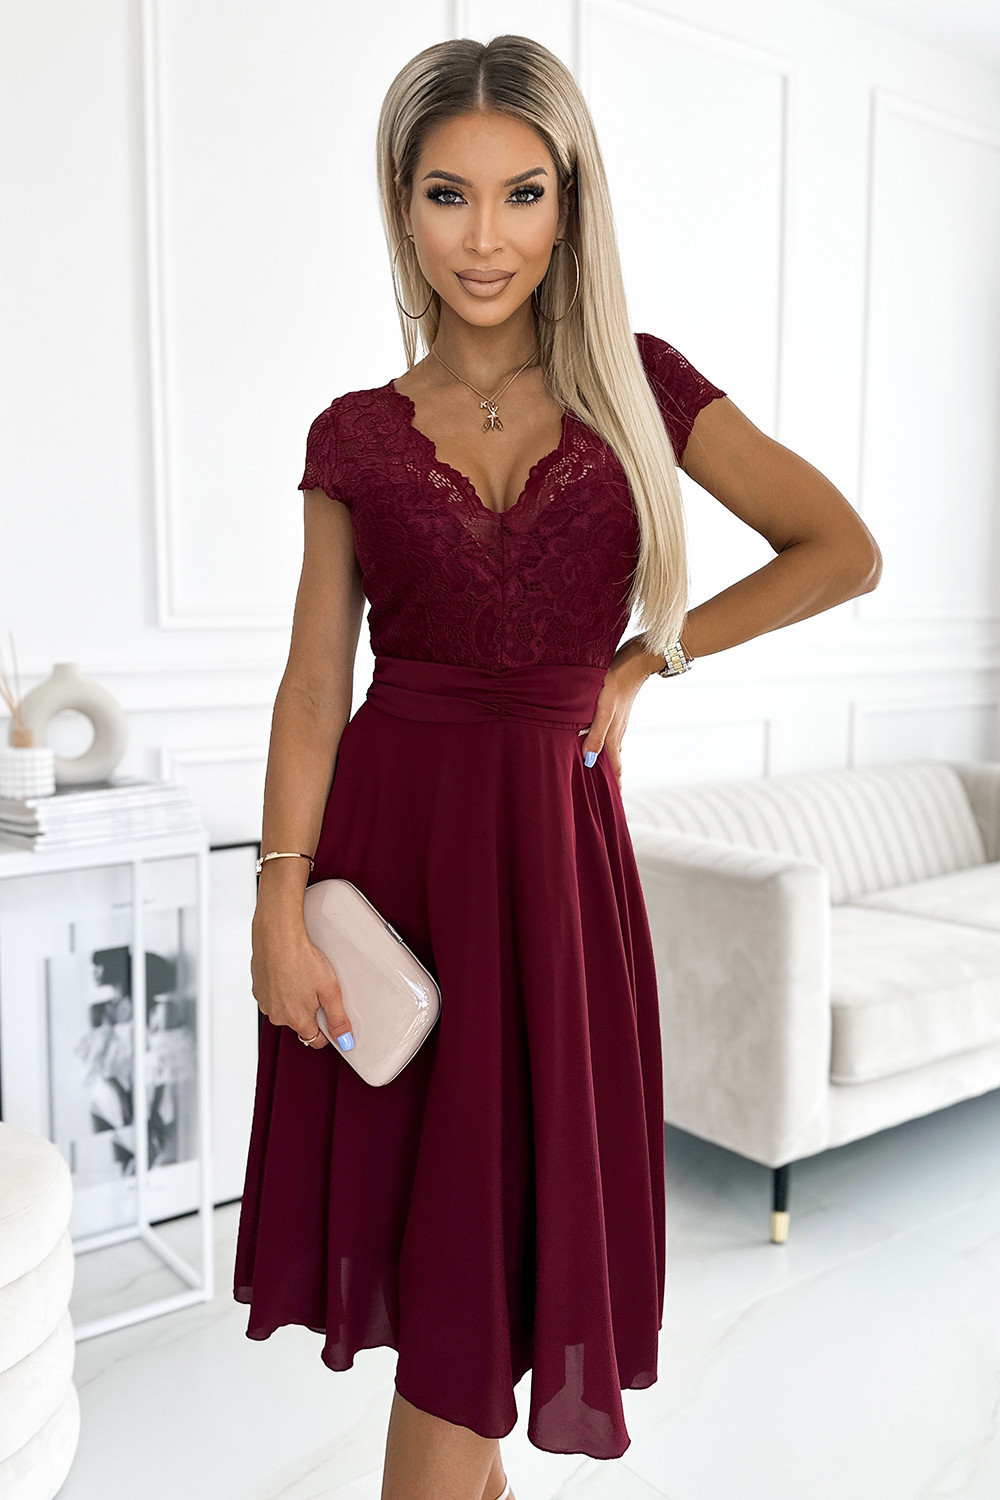 LINDA - Dámské šifonové šaty ve vínové bordó barvě s krajkovým výstřihem 381-5 S